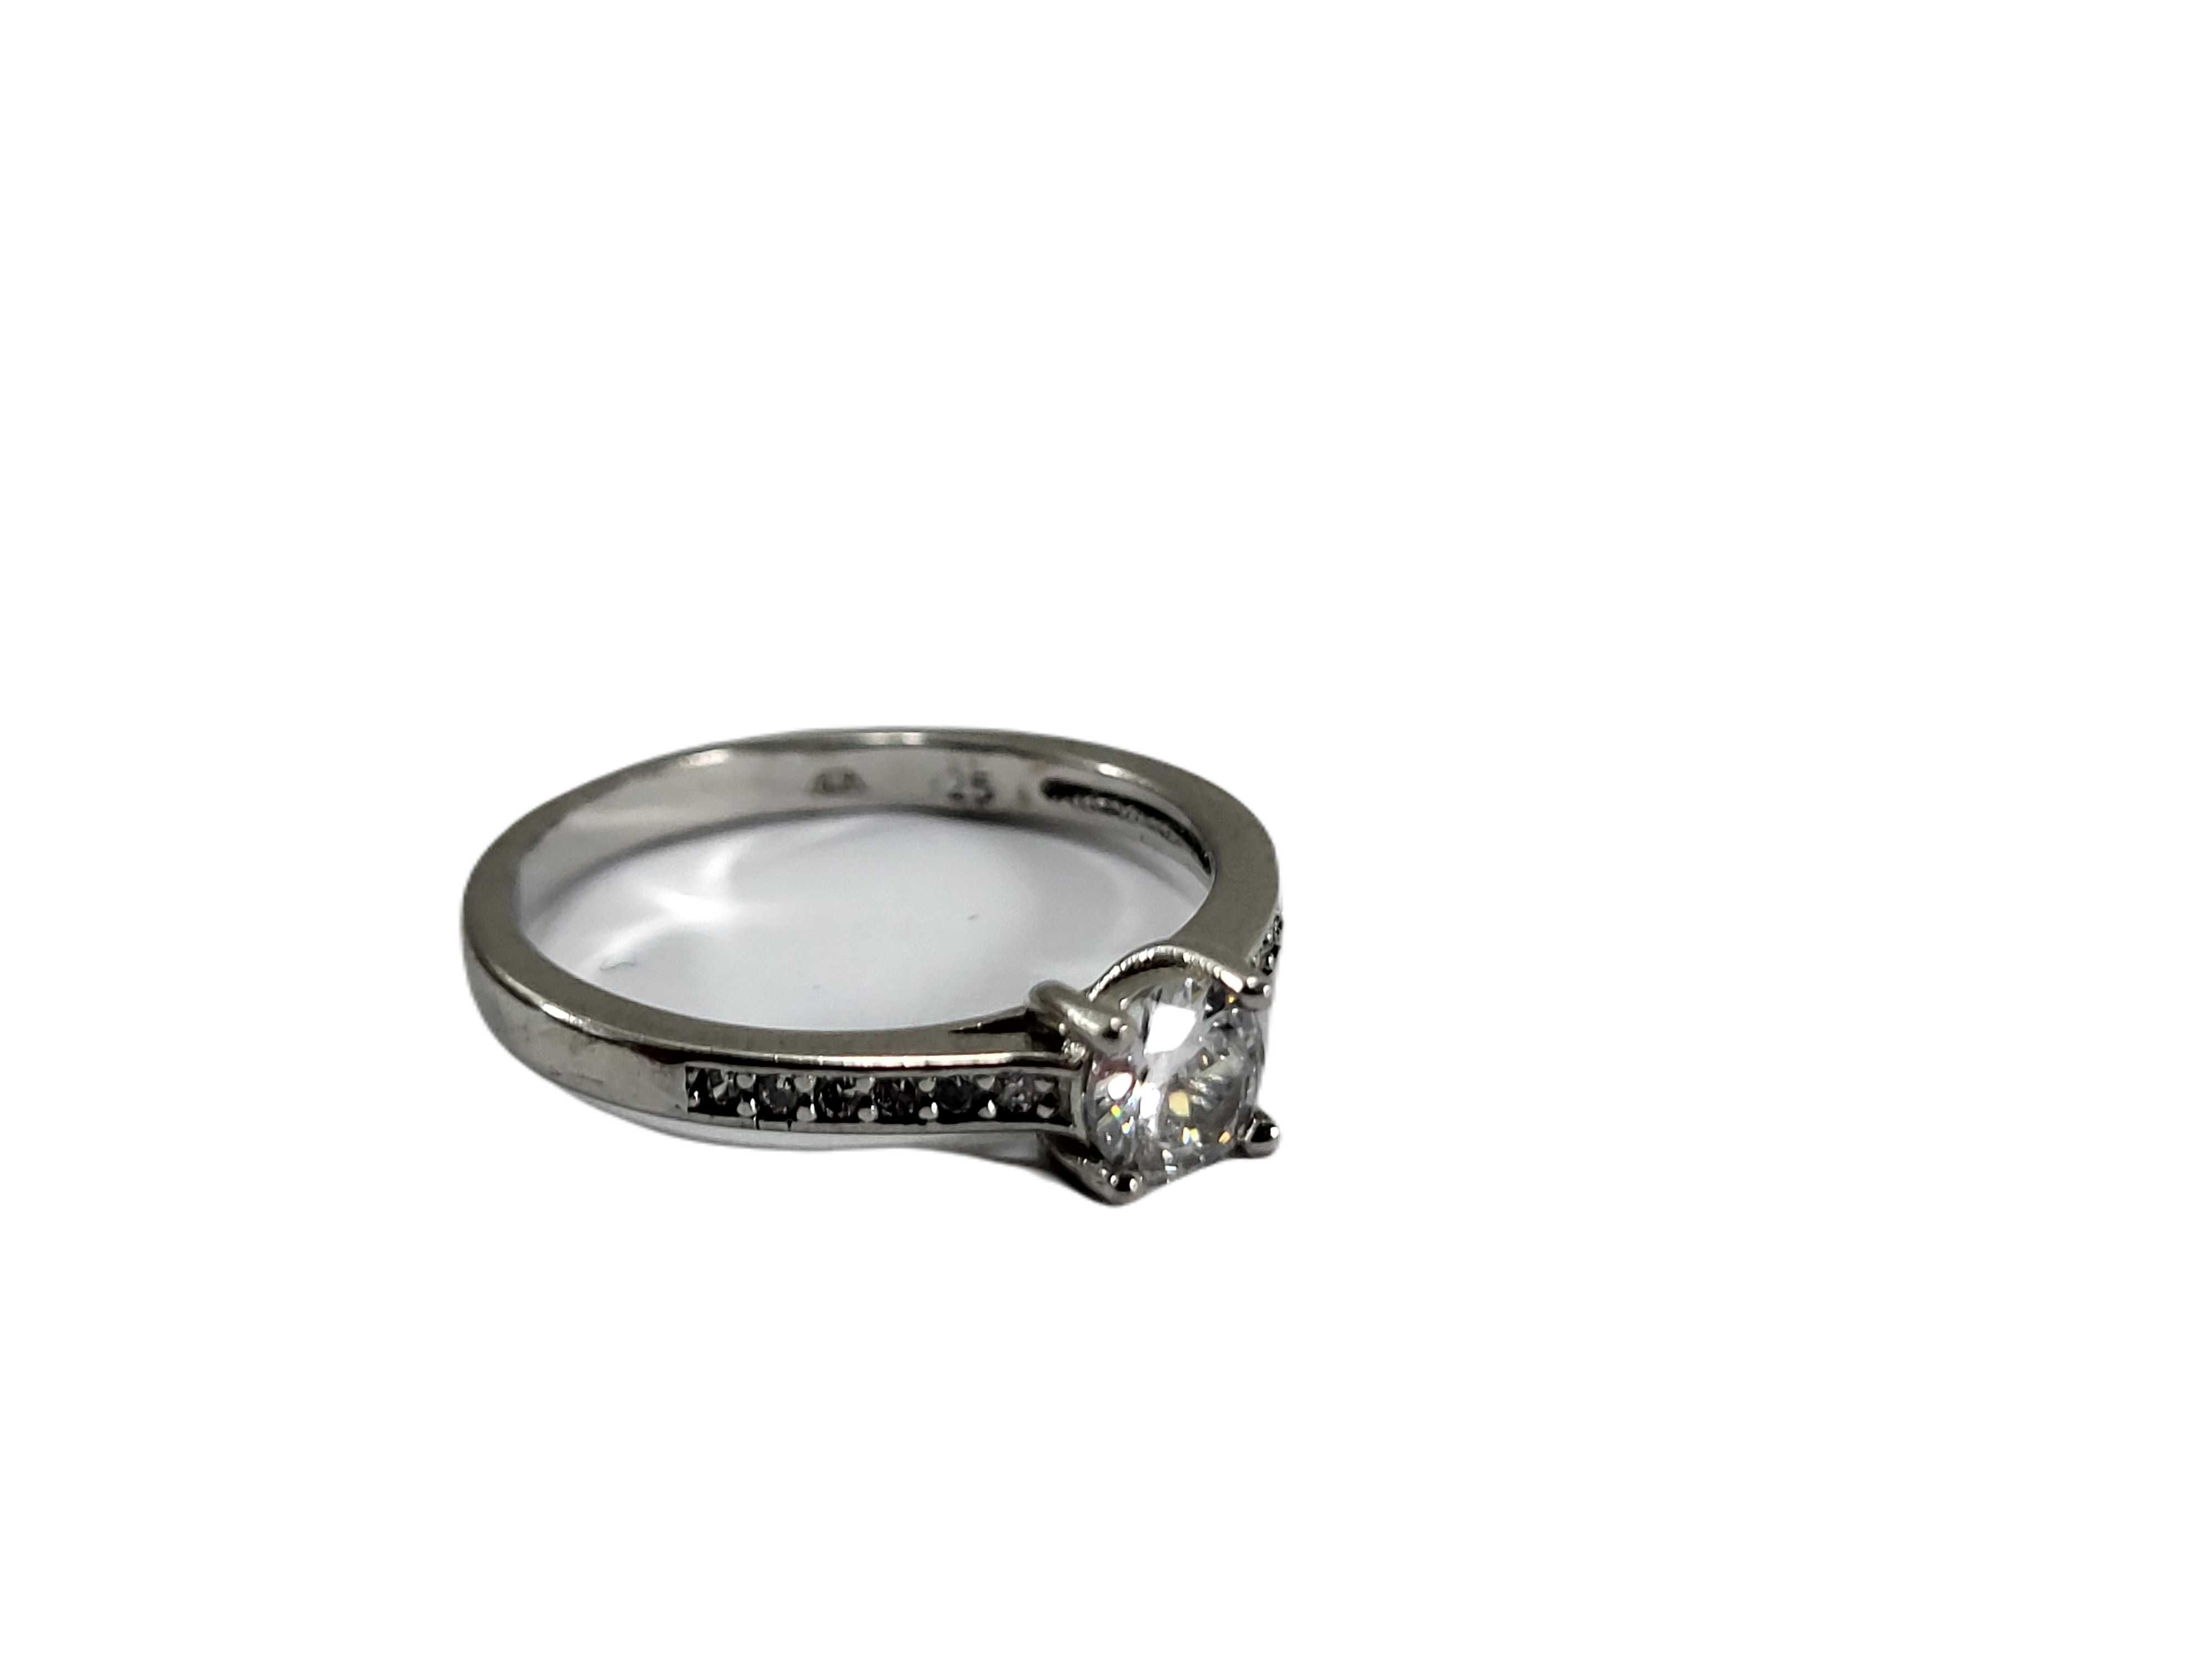 SZ131 delikatny srebrny pierścionek z cyrkoniami 925 R:16